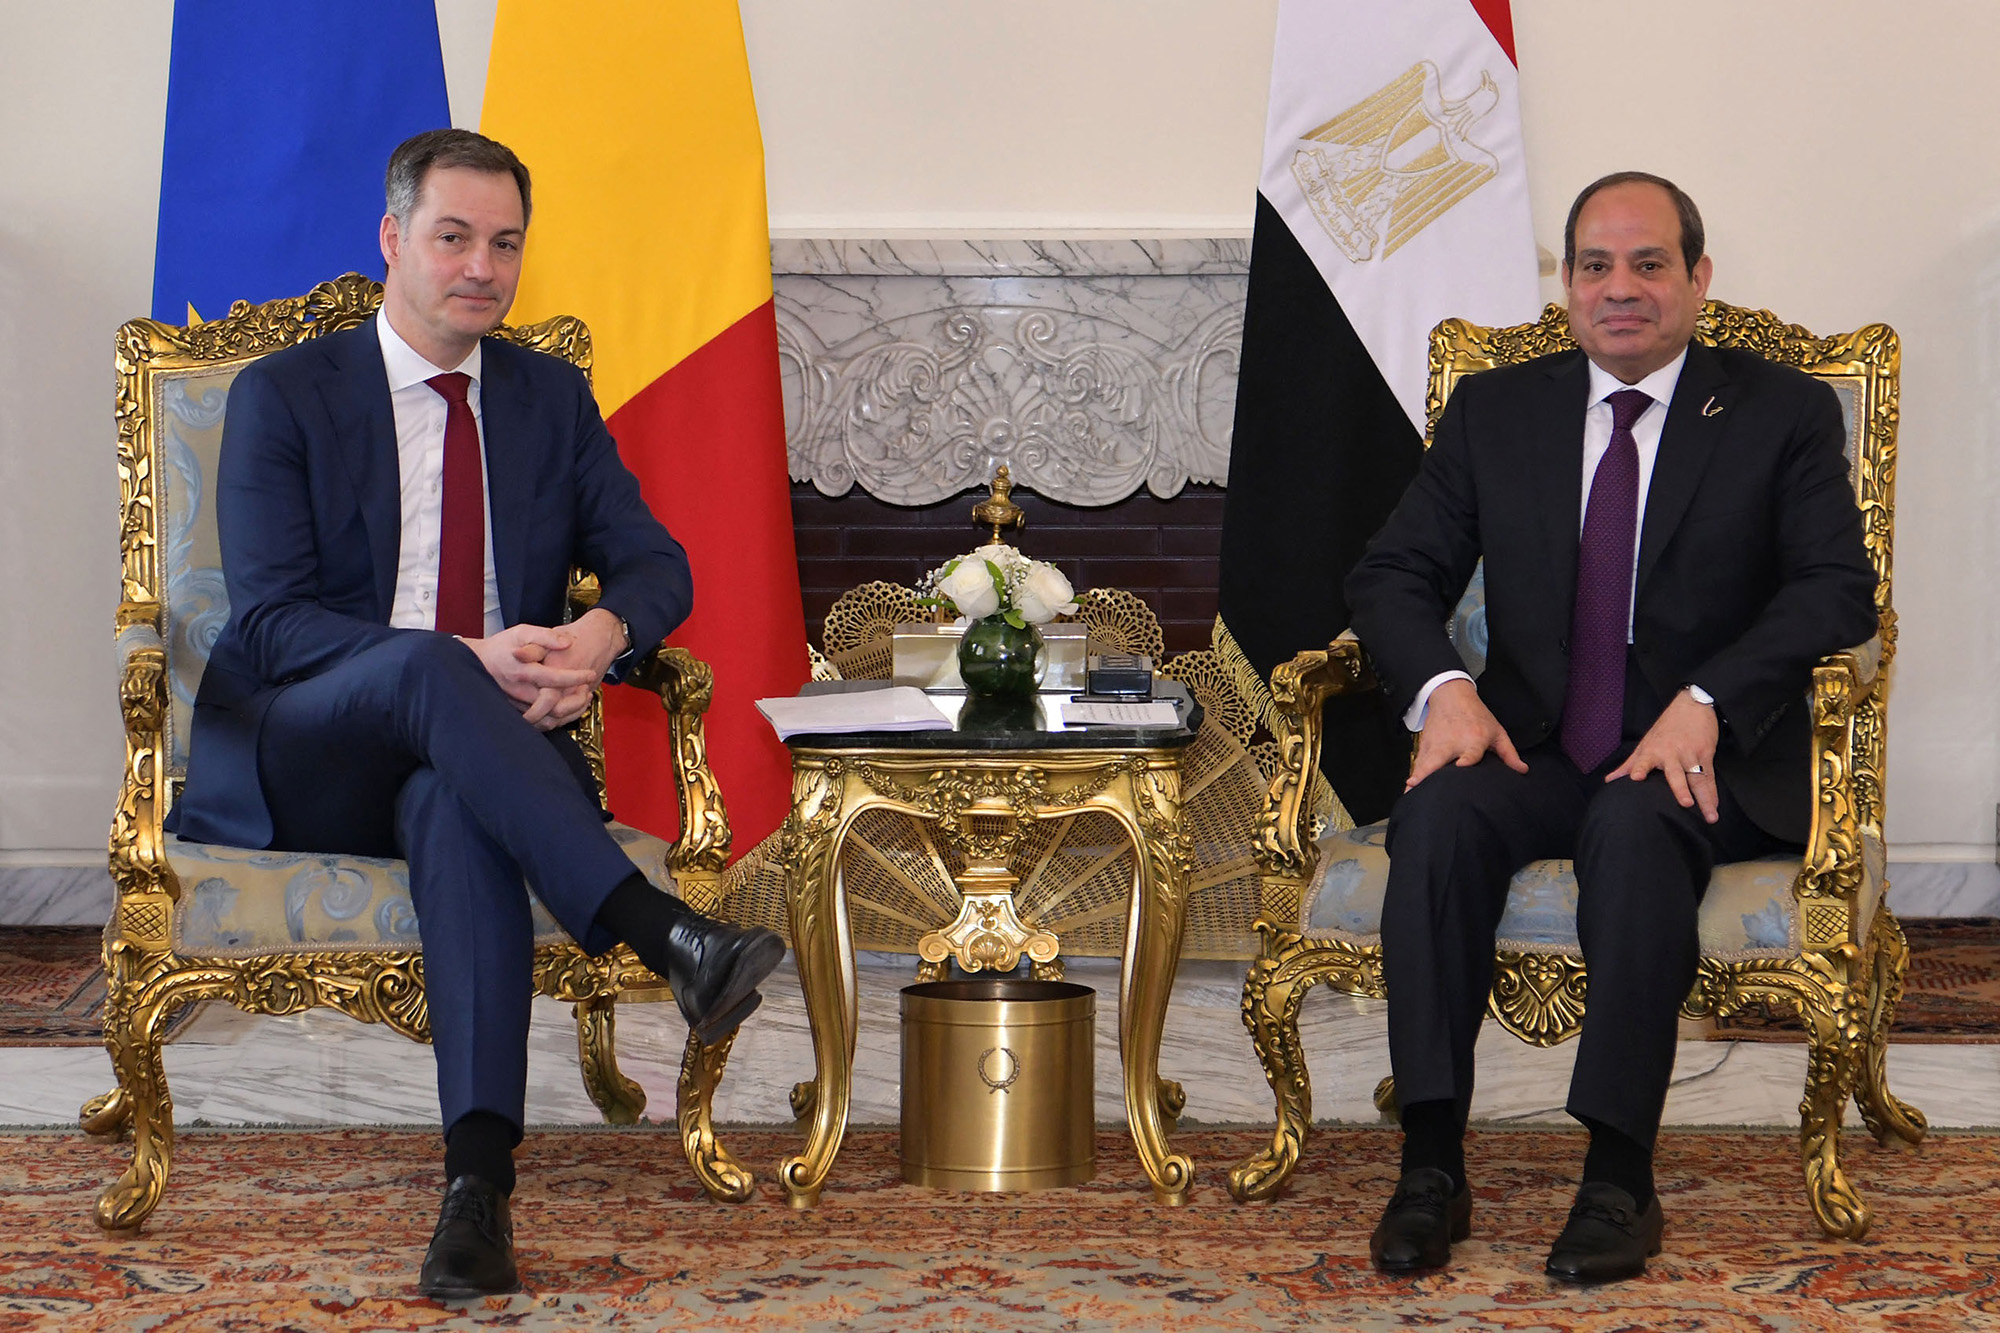 Premier De Croo und Ägyptens Präsident al-Sisi